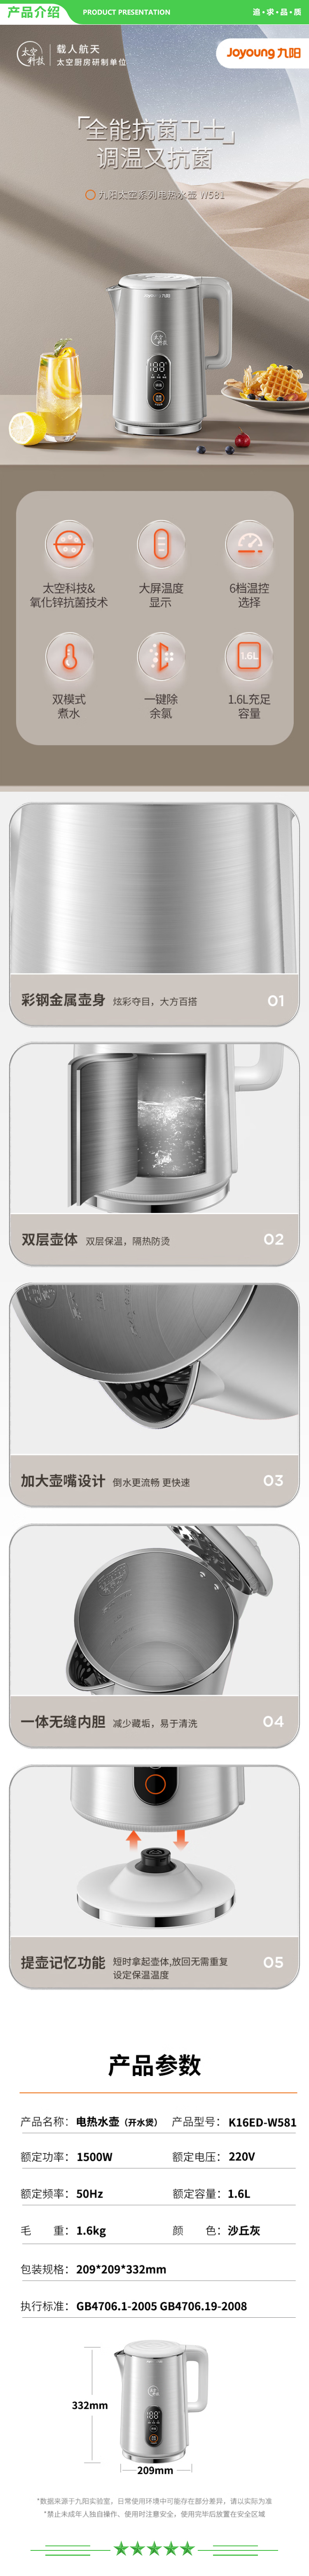 九阳 Joyoung K16ED-W581 电水壶热水壶烧水壶1.6L 六段温控大屏显示 安心材质 开水壶.jpg